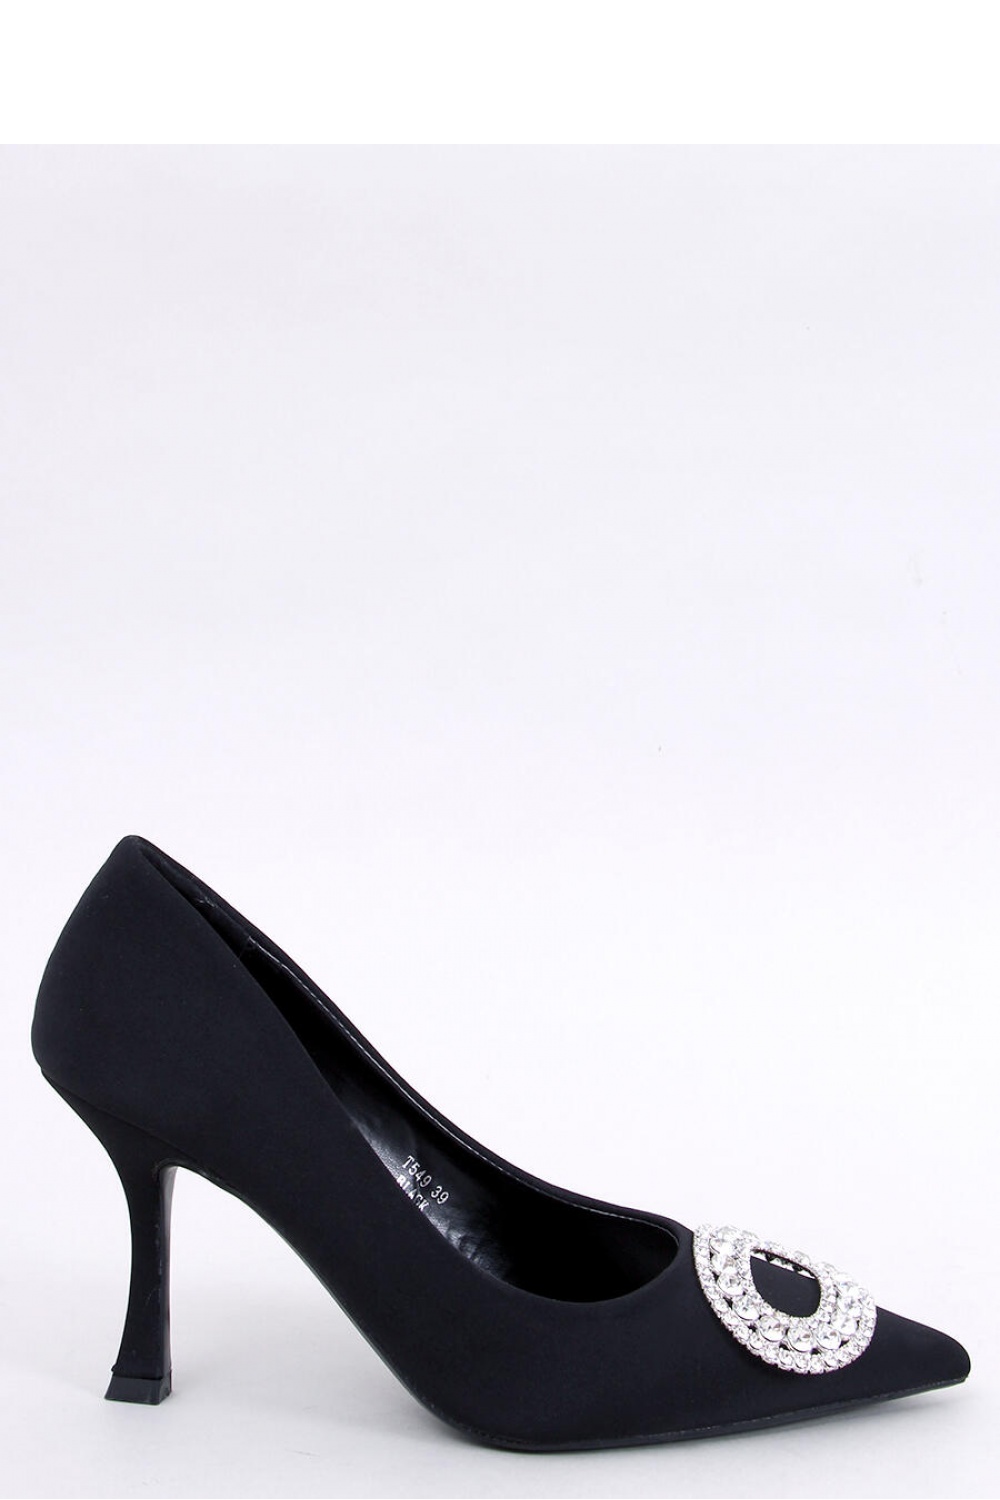 High heels model 191060 Inello